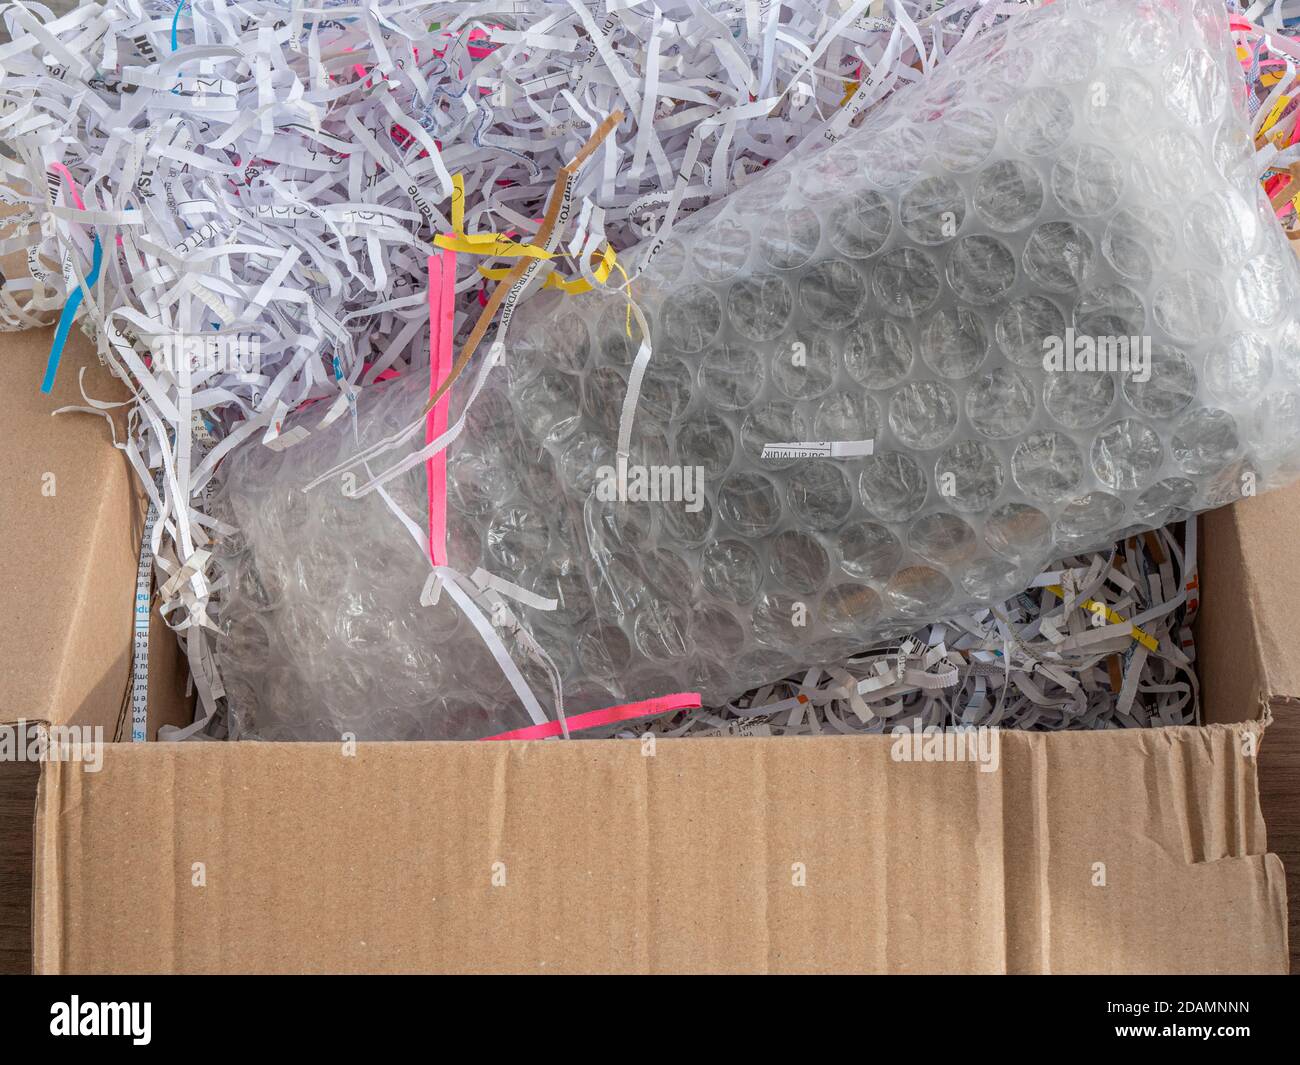 Primer plano PDV de un paquete envuelto en una burbuja en una caja de cartón, que está llena de papel triturado de embalaje. Foto de stock